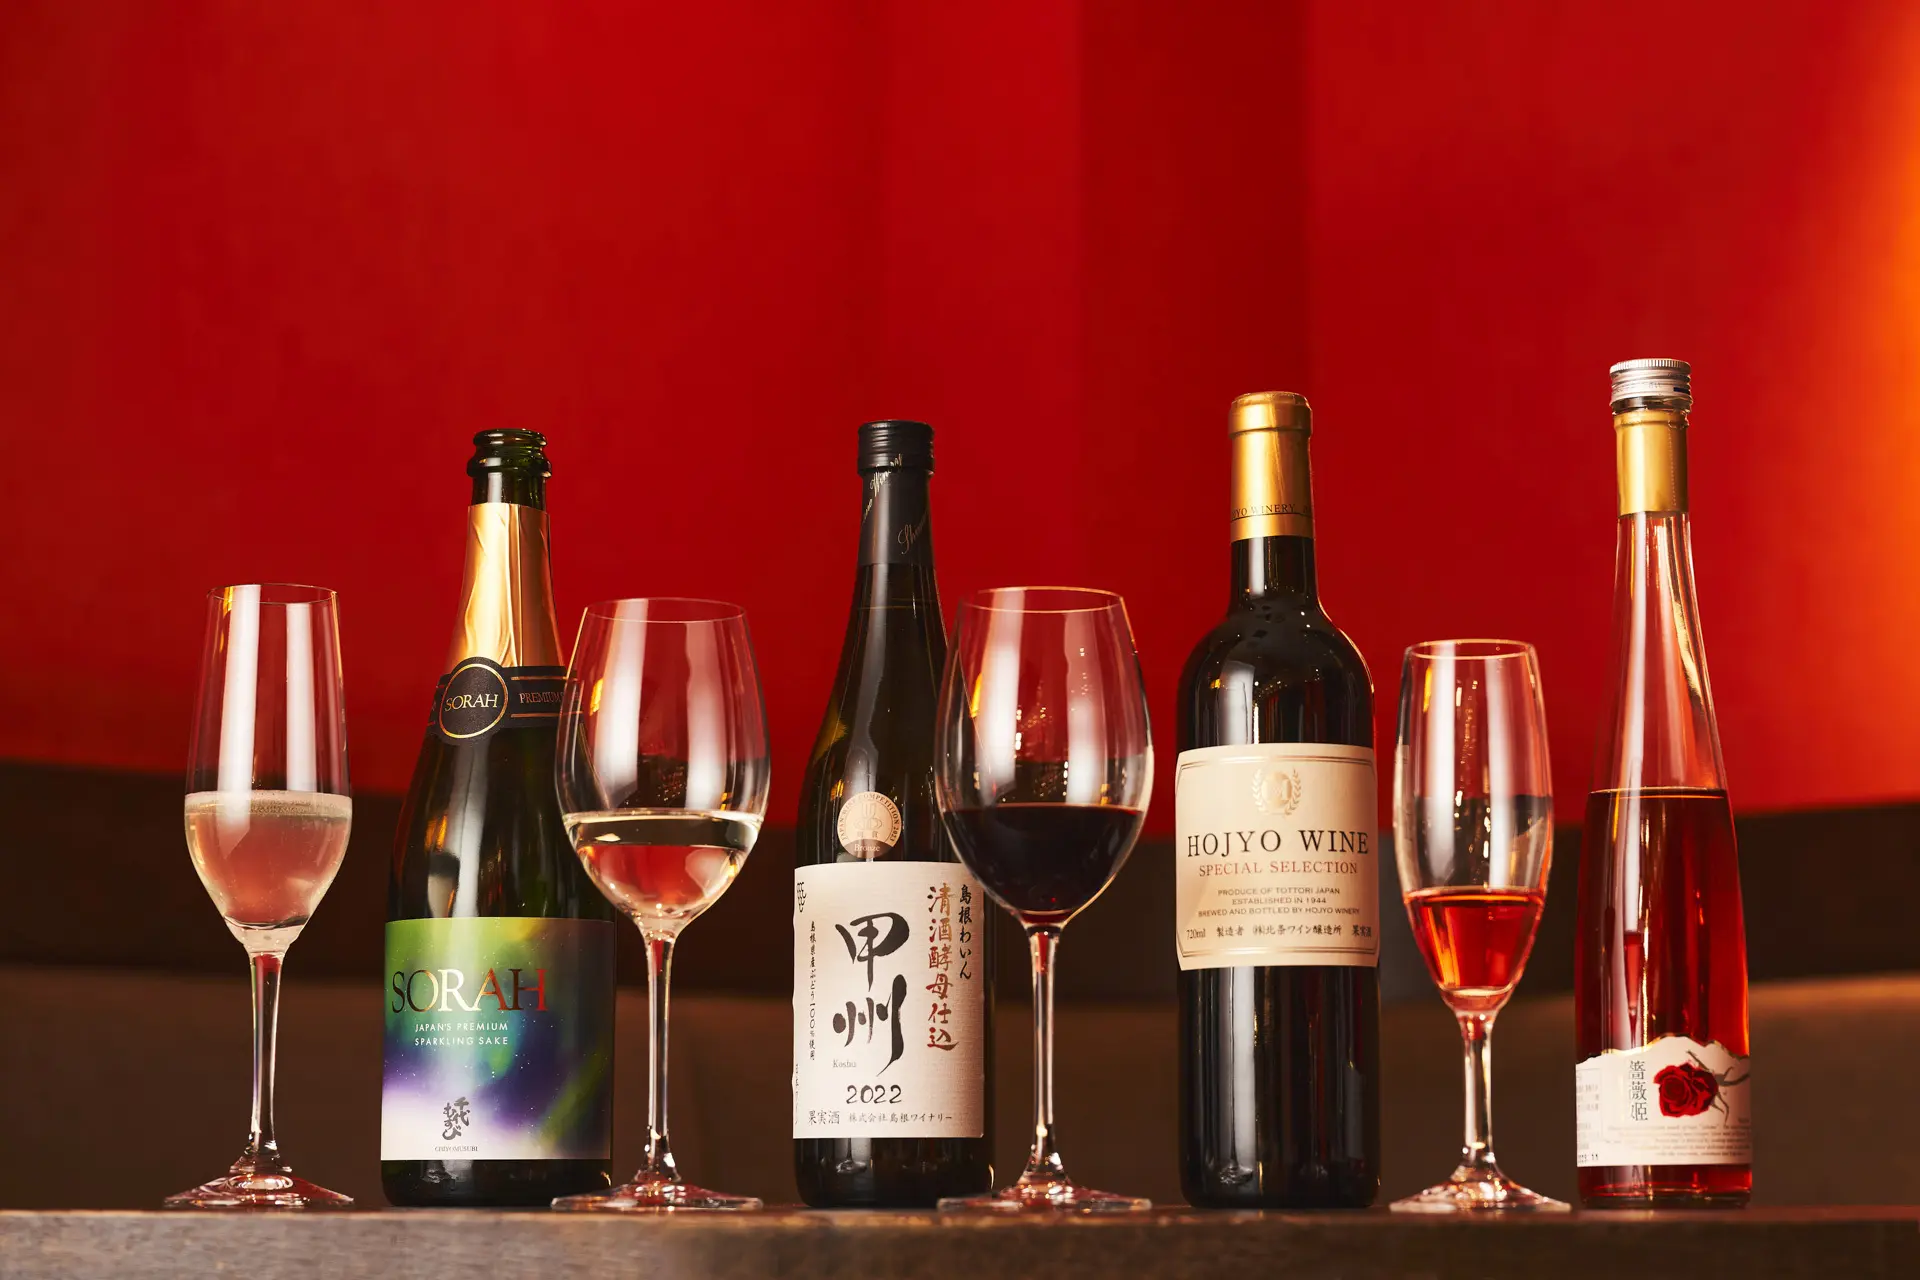 鳥取の千代むすび酒造、北条ワイン、島根の一宮酒造、島根ワイナリーなど地元の日本酒やワインとペアリング